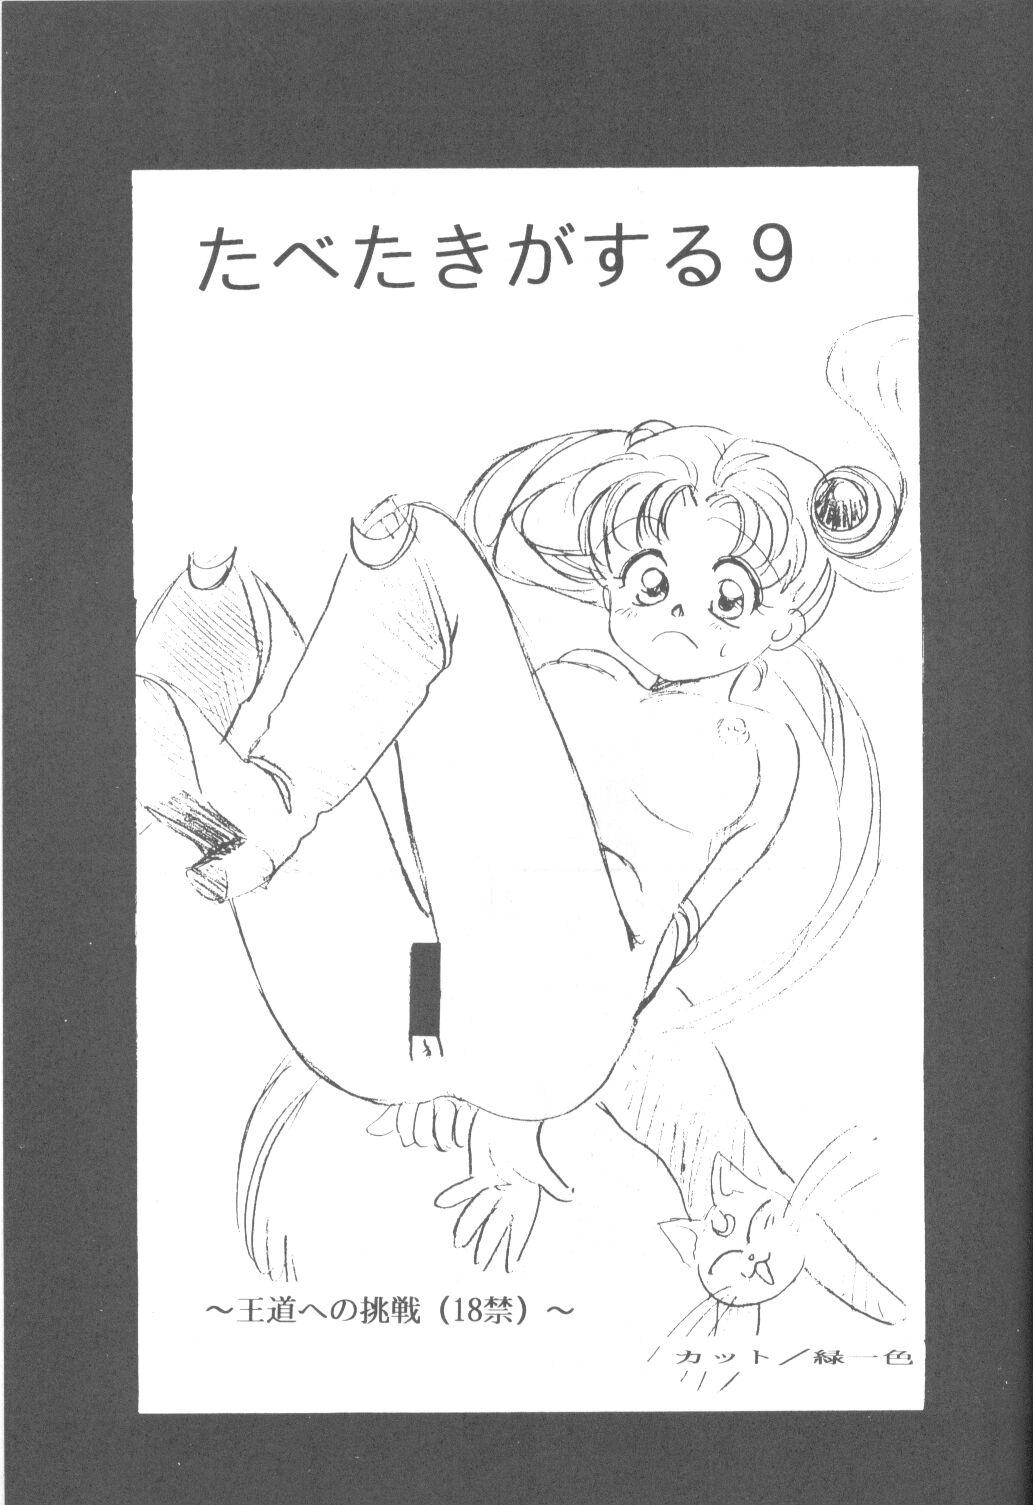 Bed Tabeta Kigasuru 9 - Sailor moon Culonas - Page 2